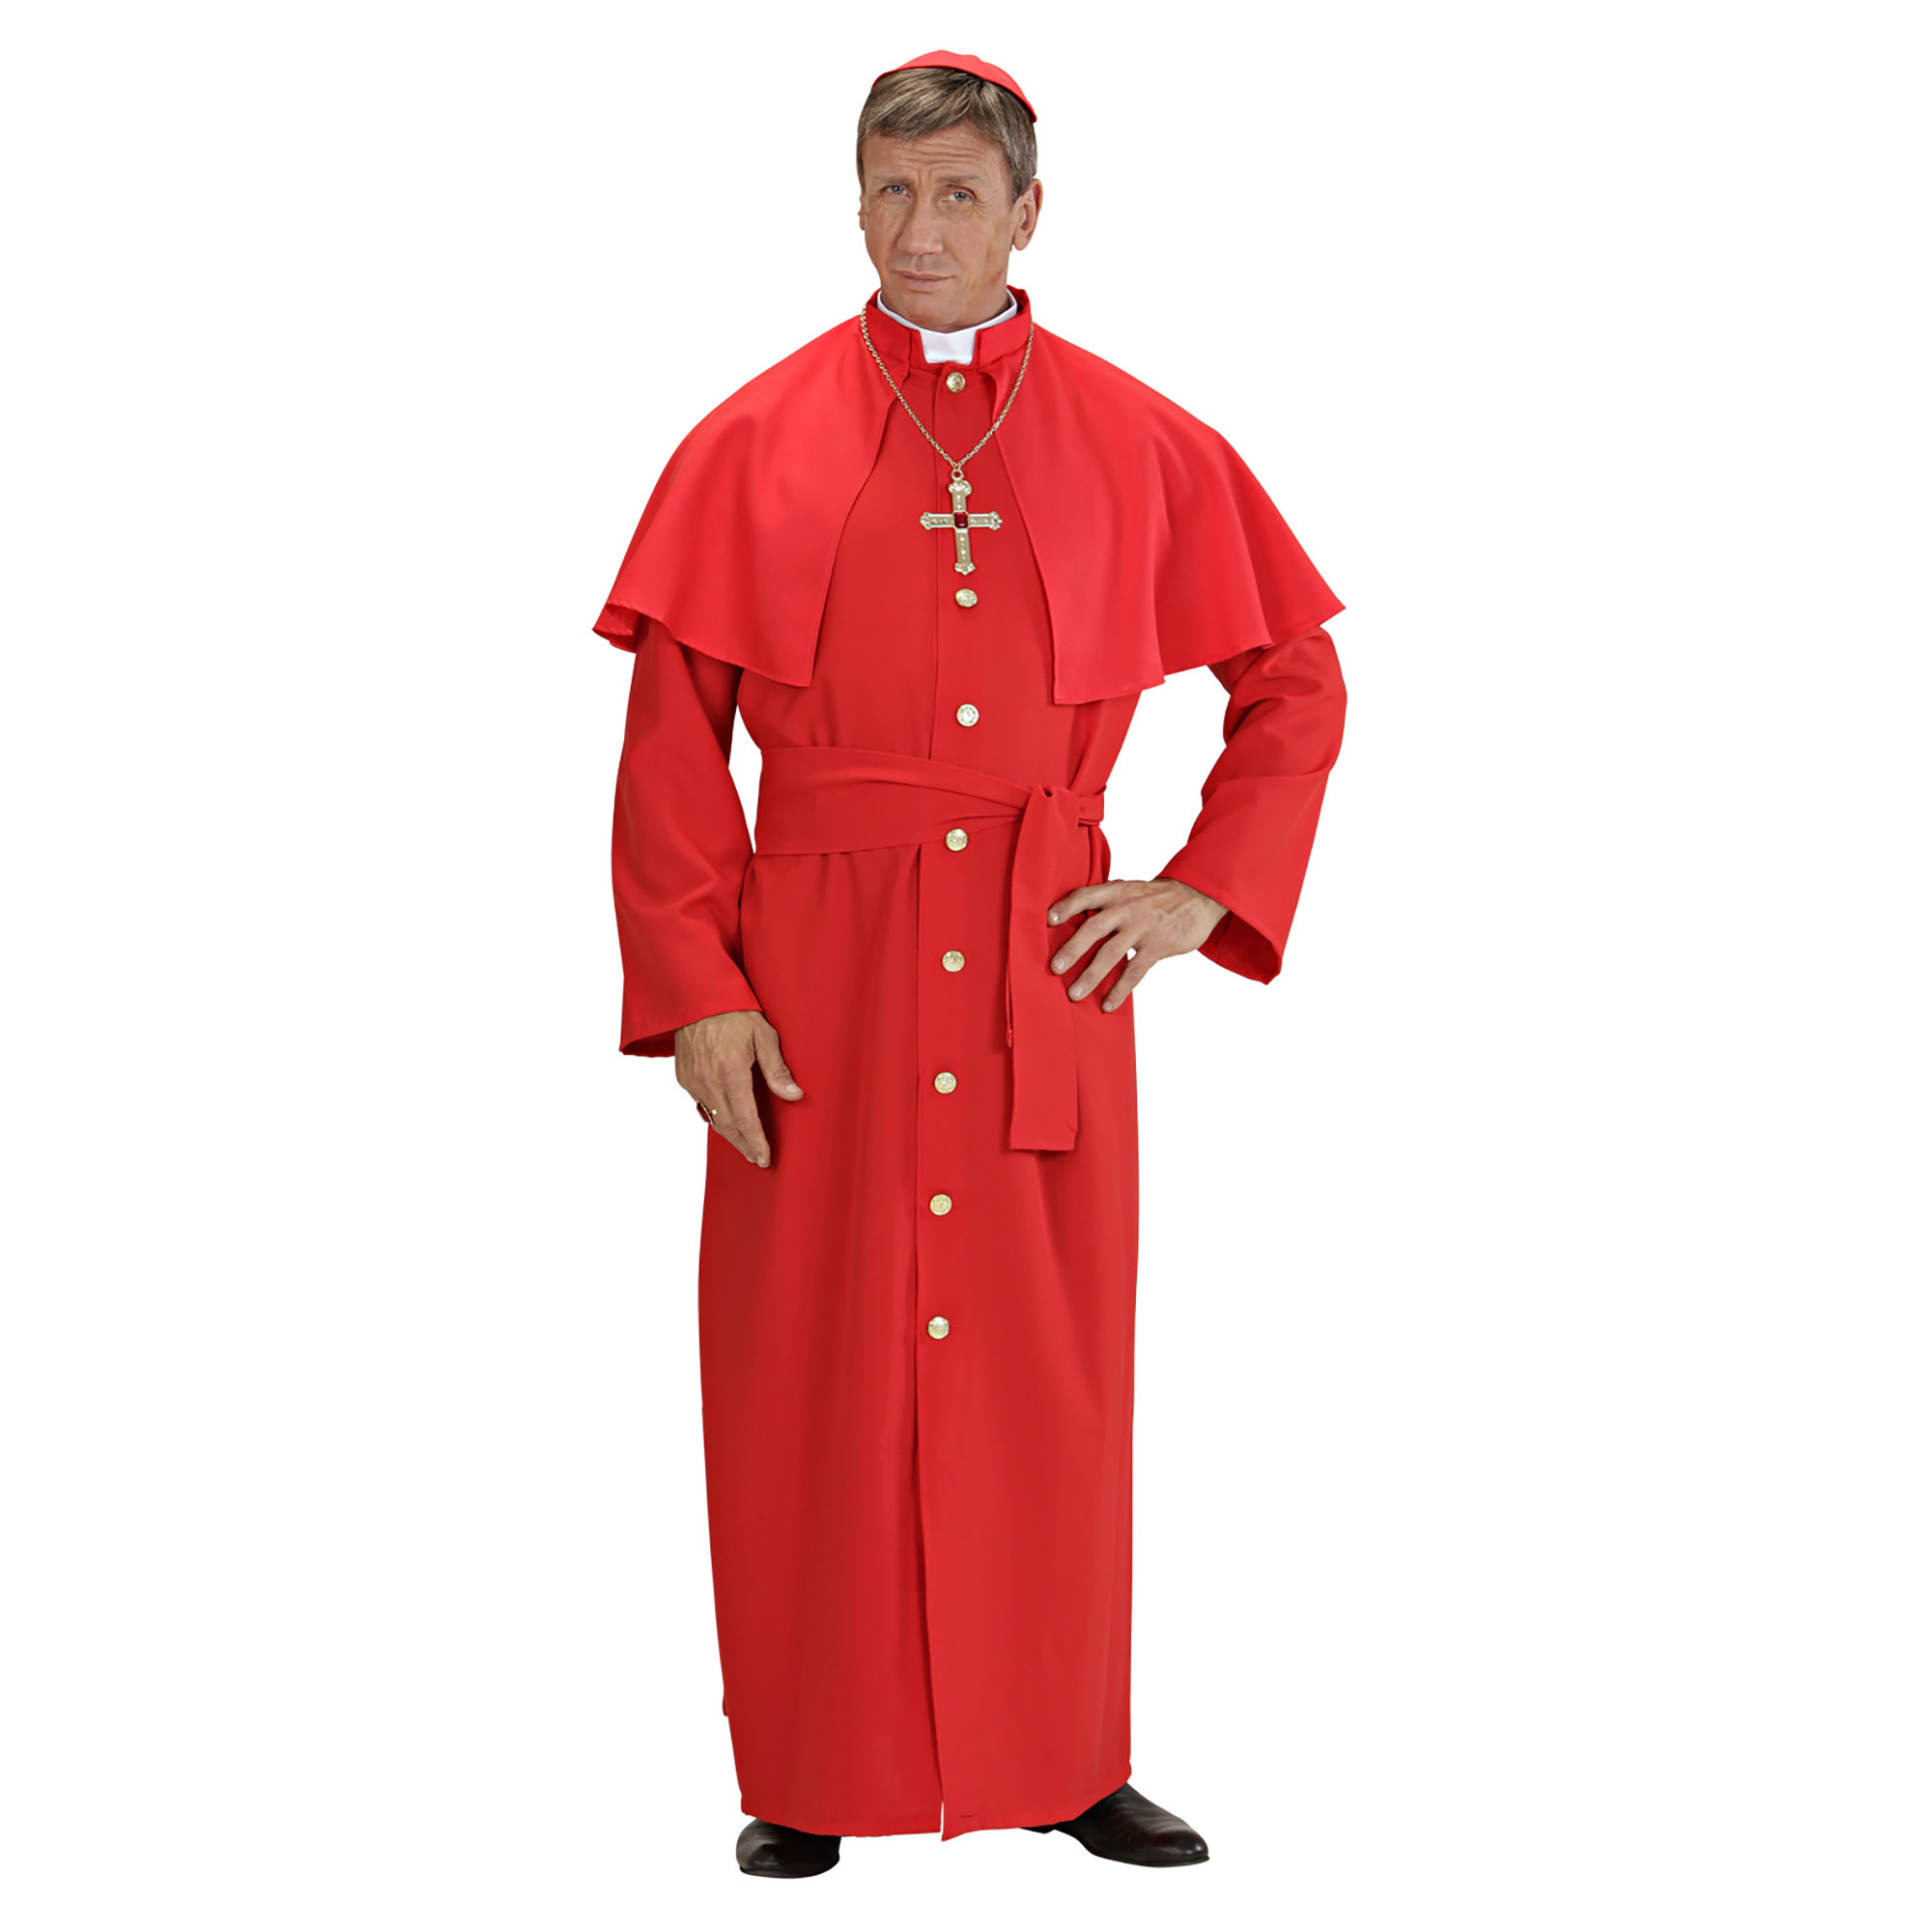 "Kardinaal carnavalskleding voor mannen  - Verkleedkleding - Large"